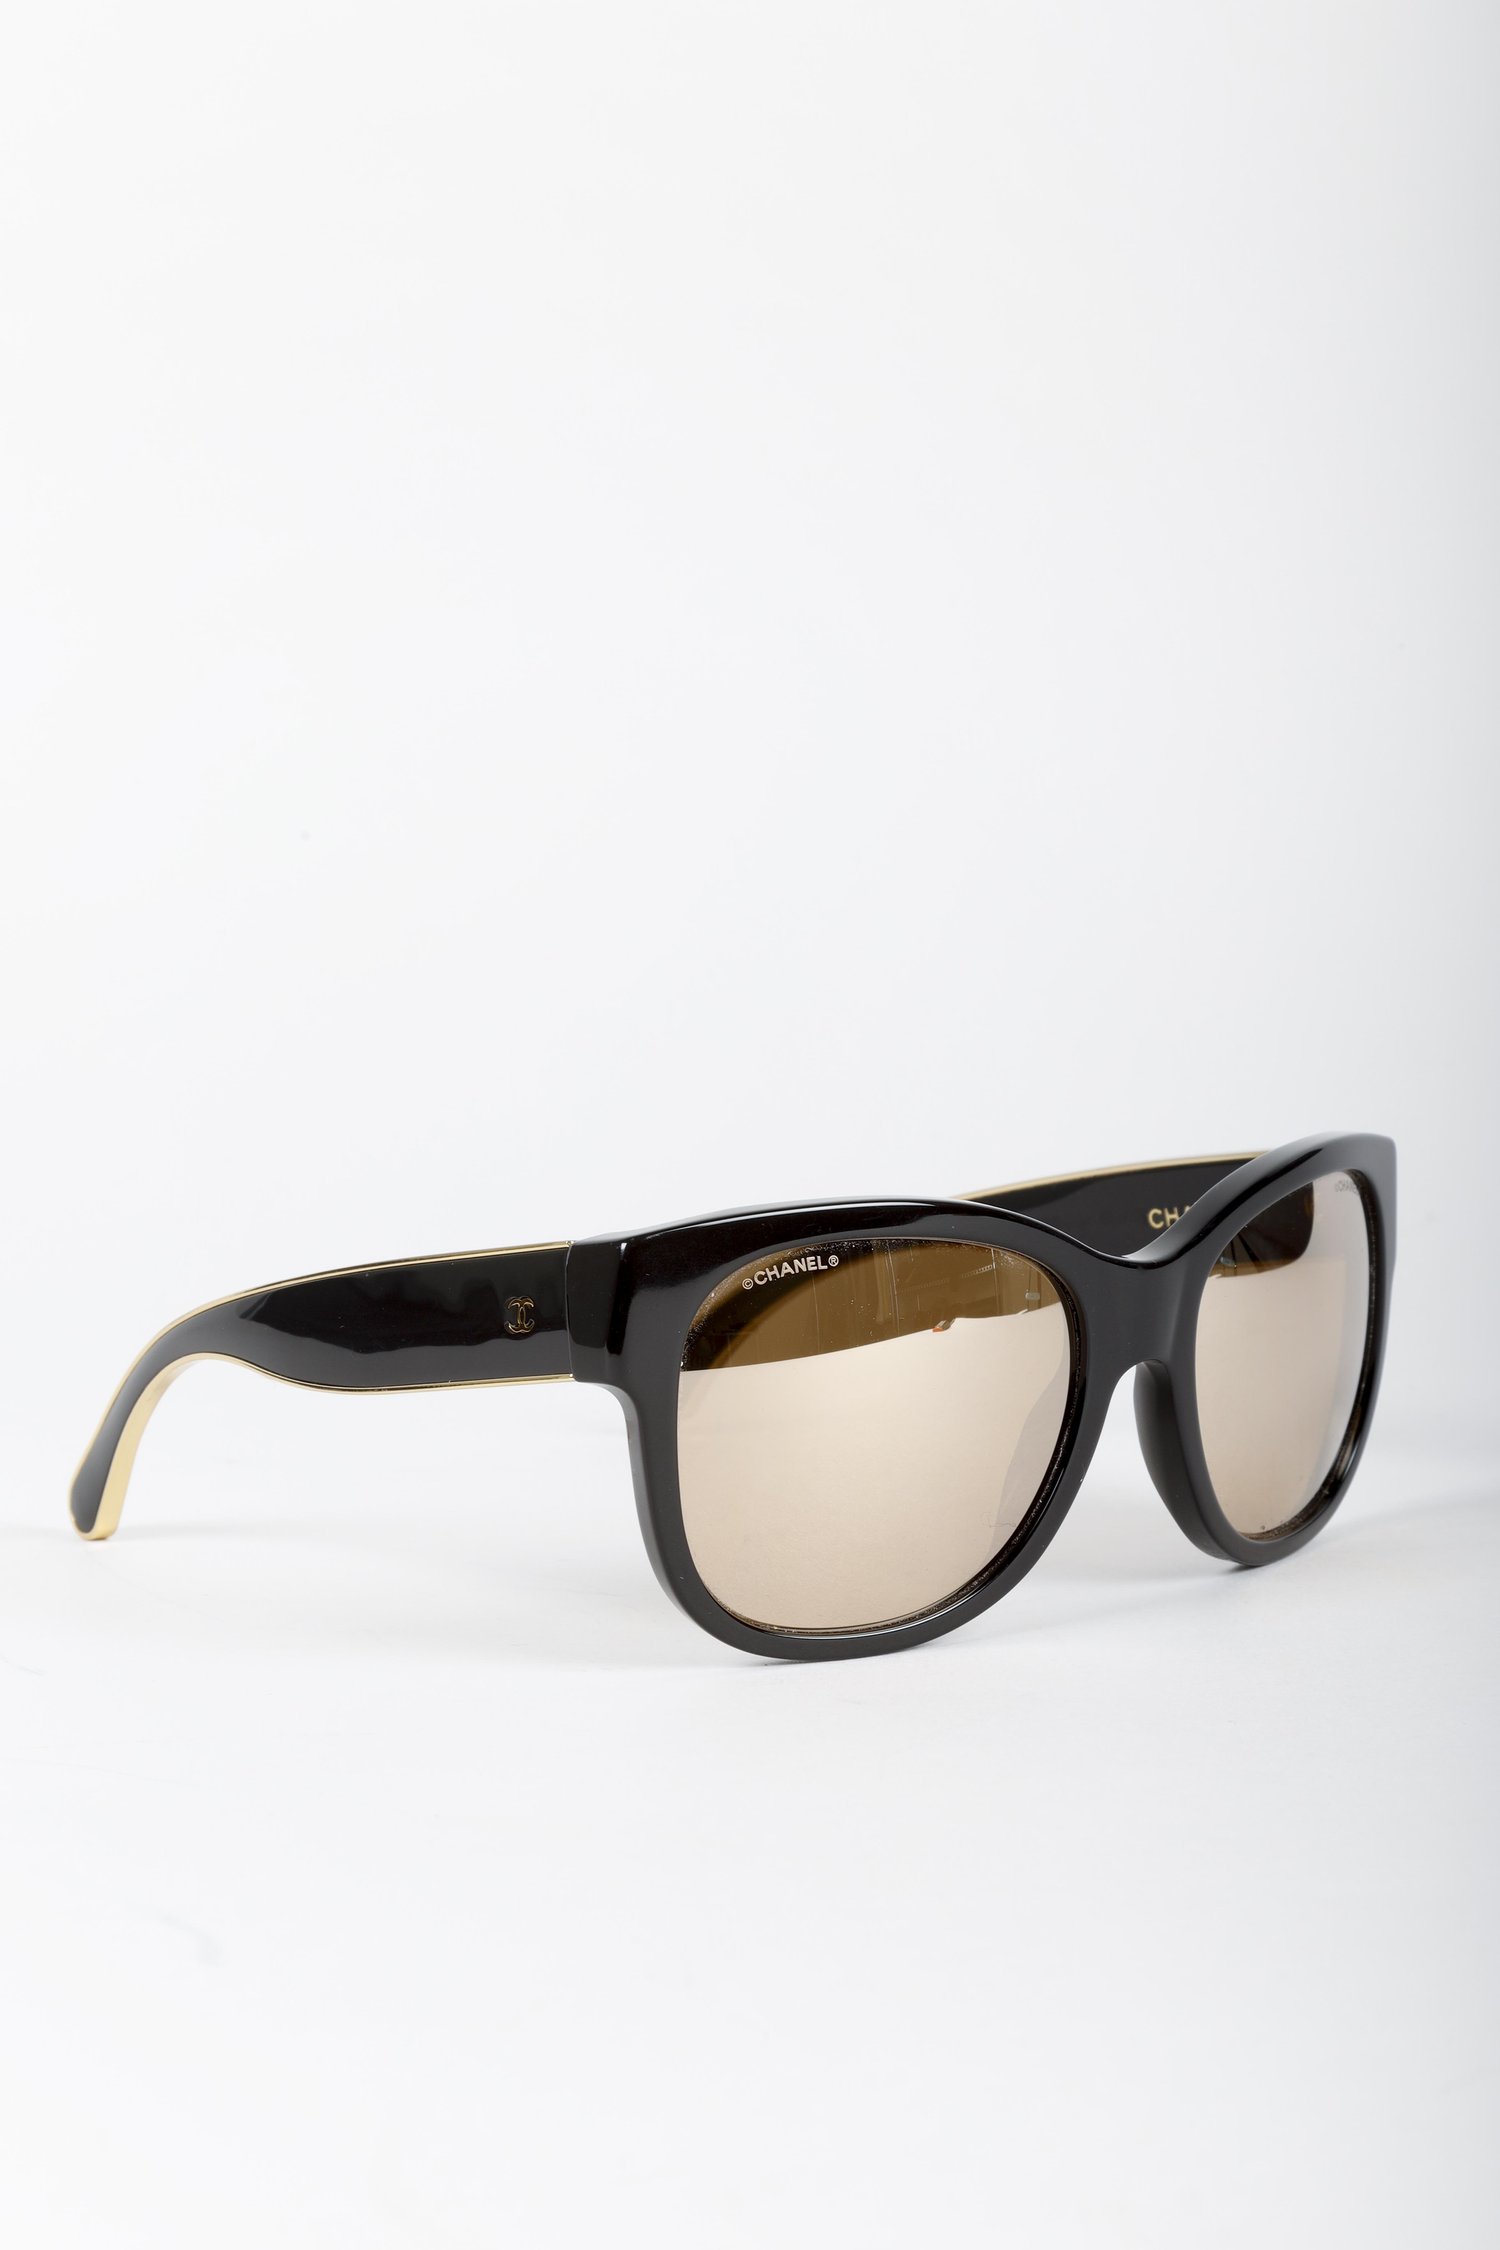 Chanel Interlocking CC Logo Oversize Sunglasses - Black Sunglasses,  Accessories - CHA941179